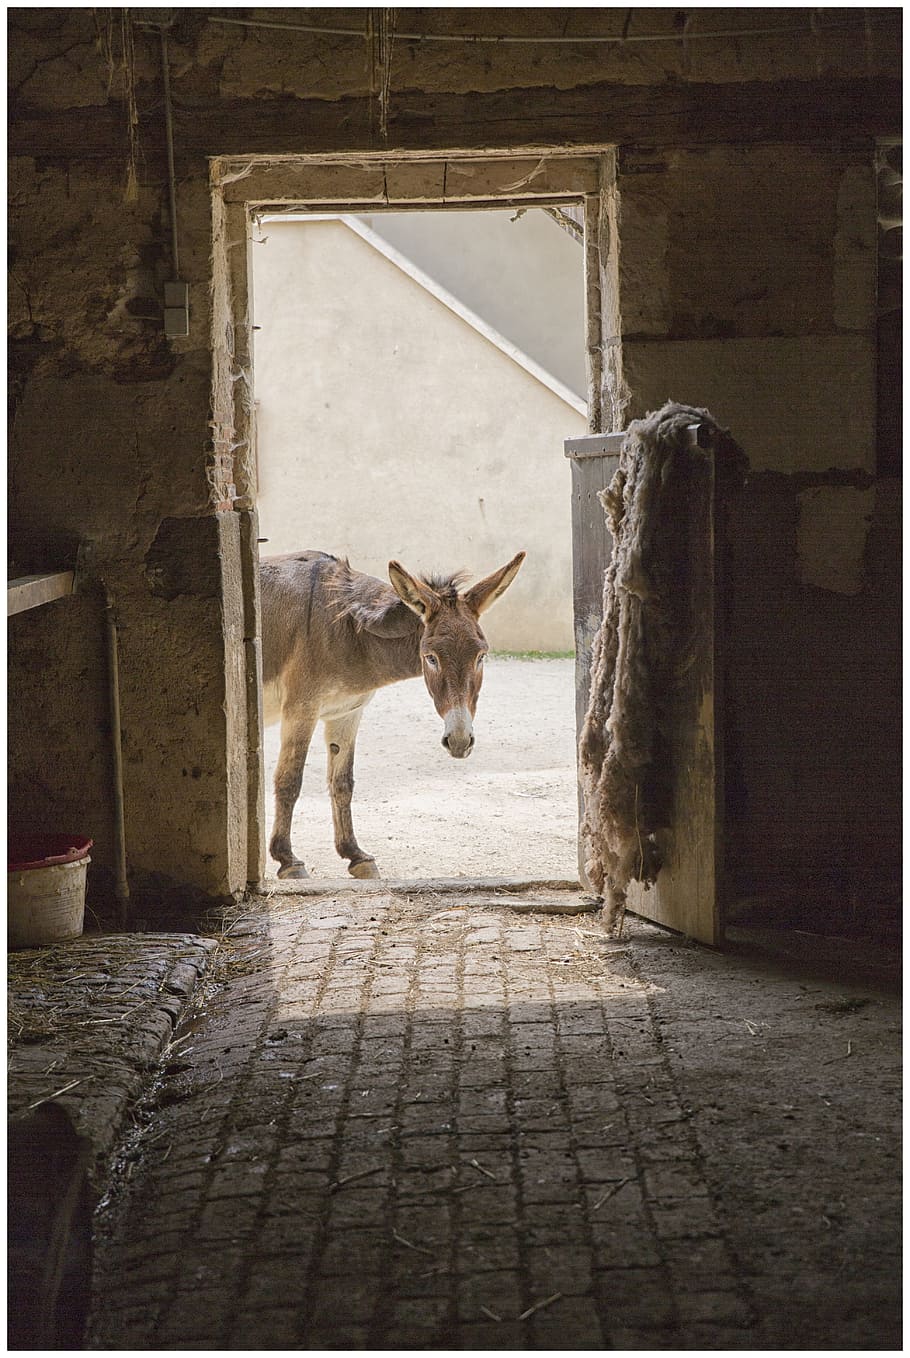 donkey near door, donkey, door, animal, farm, animals, rural, antan, agricultural, barn